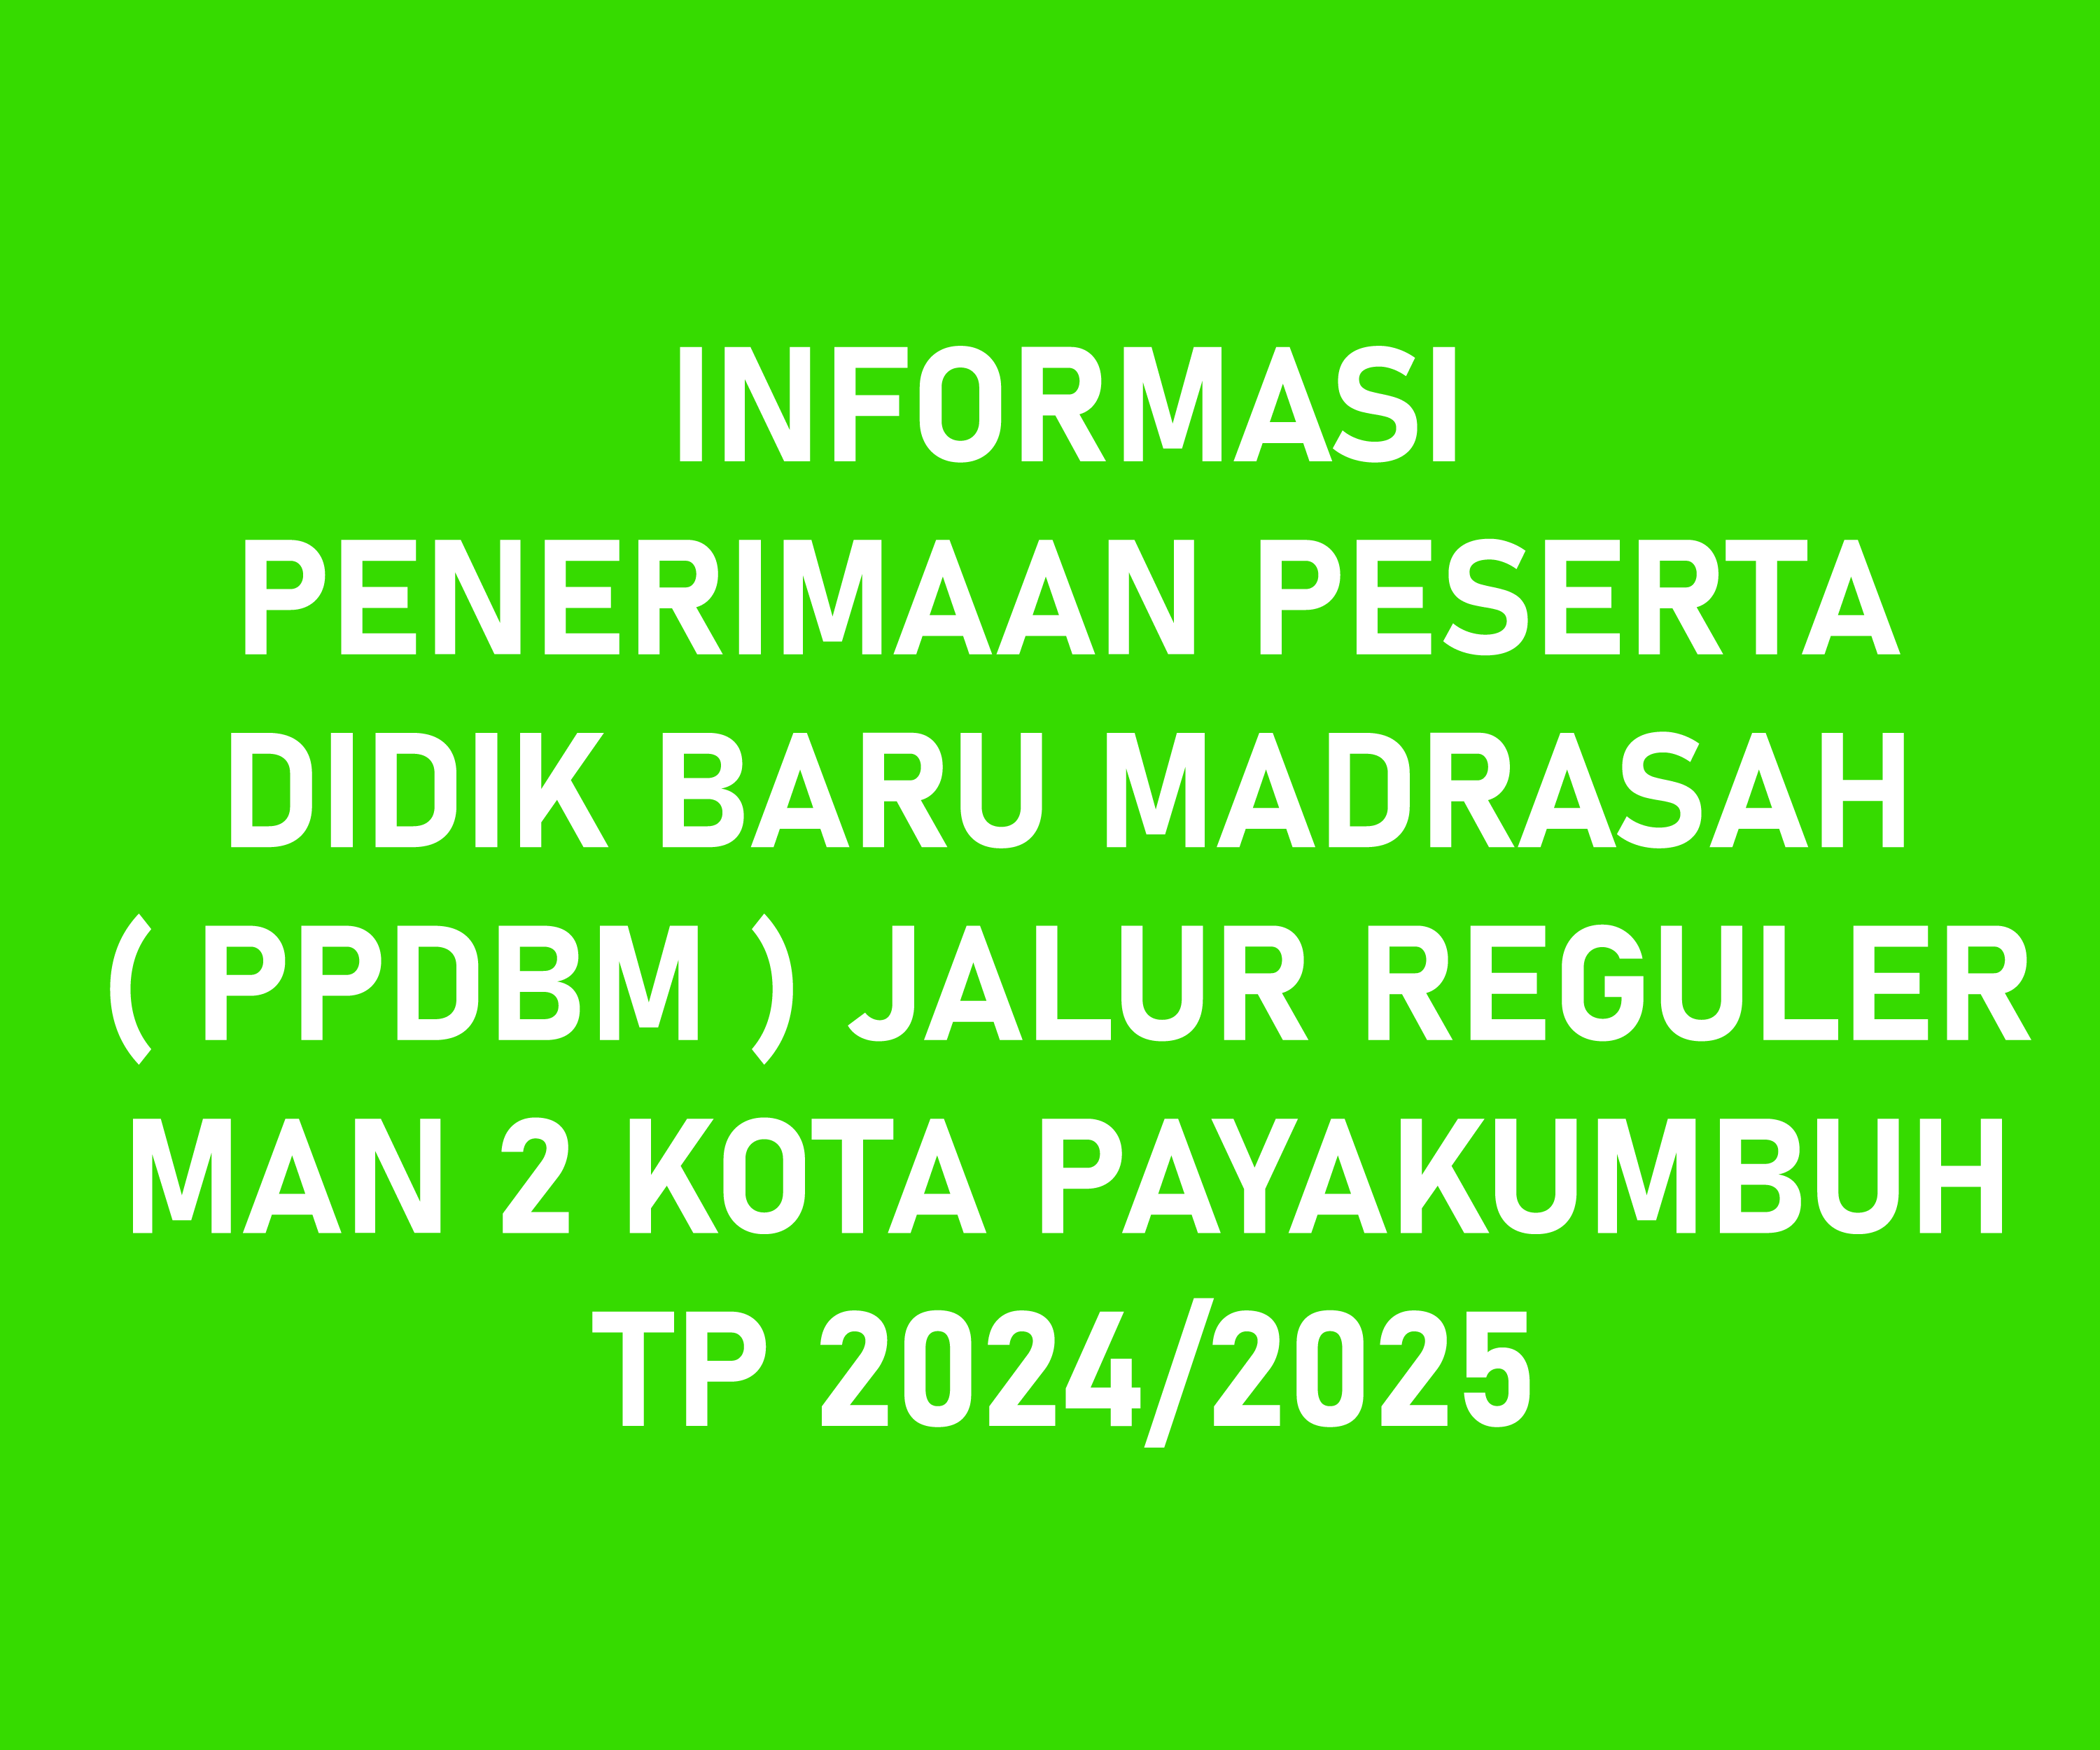 INFORMASI PENERIMAAN PESERTA DIDIK BARU MADRASAH ( PPDBM ) JALUR REGULER MAN 2 KOTA PAYAKUMBUH TP 2024/2025